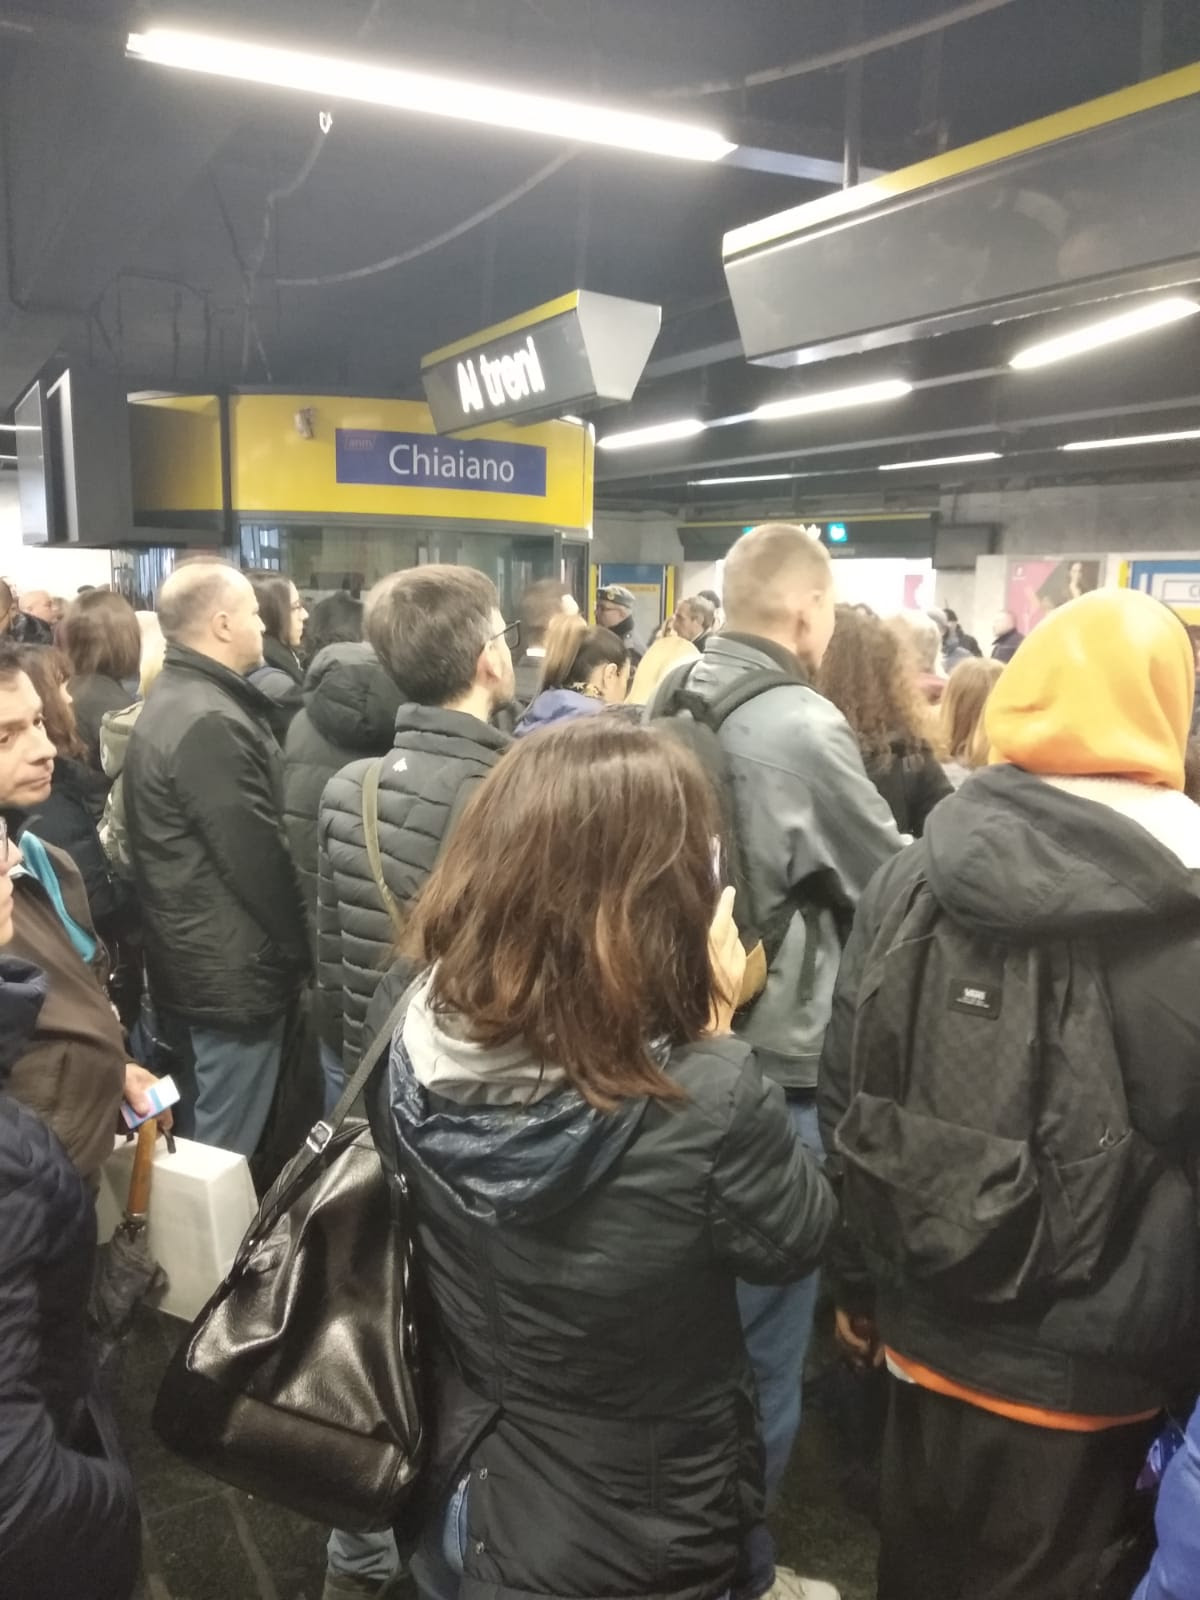 Napoli, Metro 1, stazione di Chiaiano in tilt: troppa folla, centinaia di passeggeri in attesa per accedere alle banchine